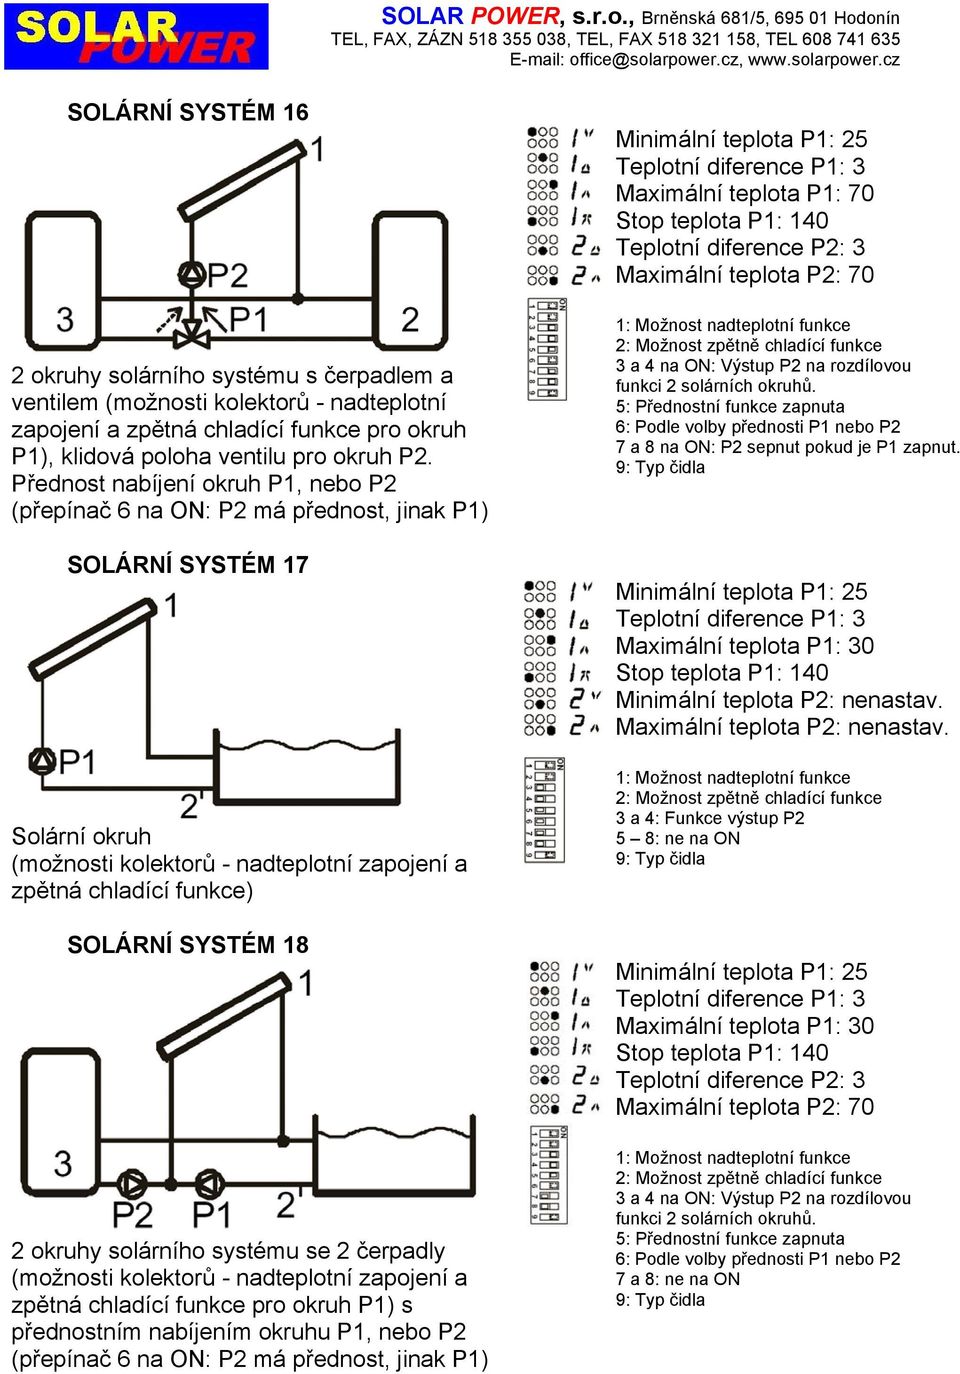 2 okruhy solárního systému se 2 čerpadly (možnosti kolektorů - nadteplotní zapojení a zpětná chladící funkce pro okruh P1) s přednostním nabíjením okruhu P1, nebo P2 (přepínač 6 na ON: P2 má